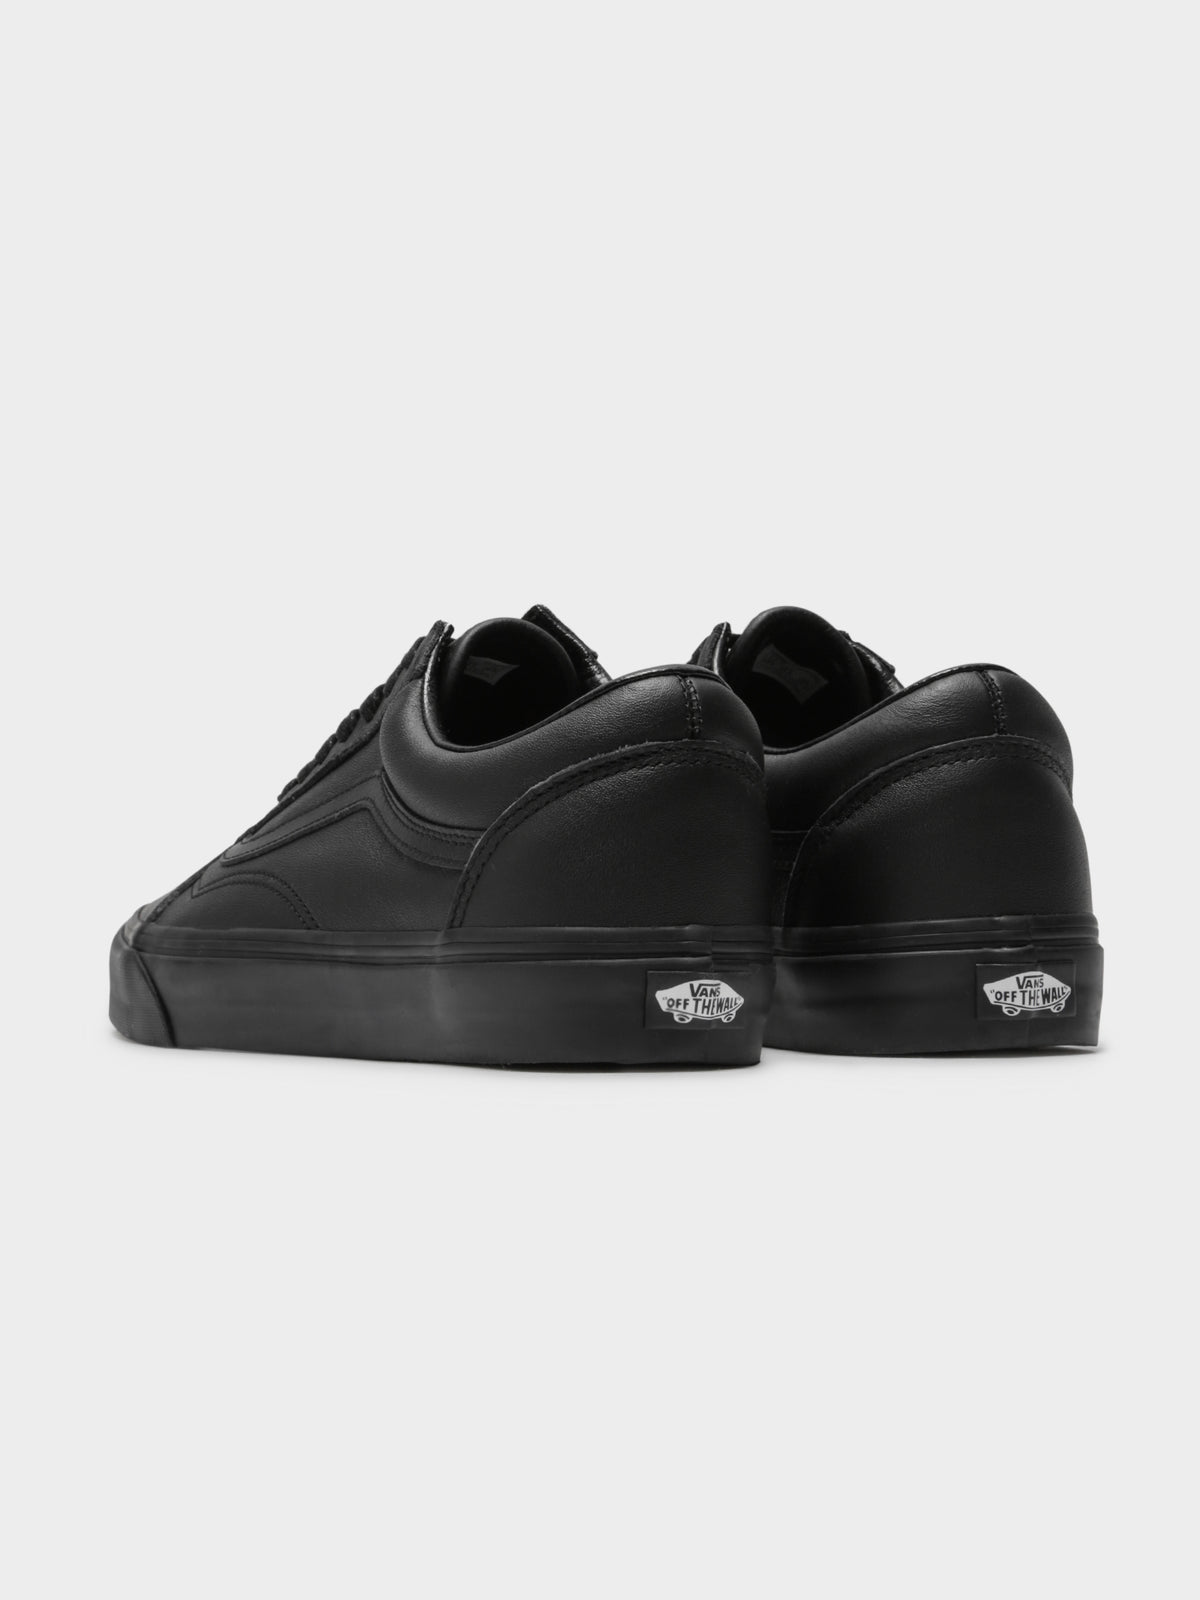 Unisex Old Skool Leather Sneakers in Triple Black